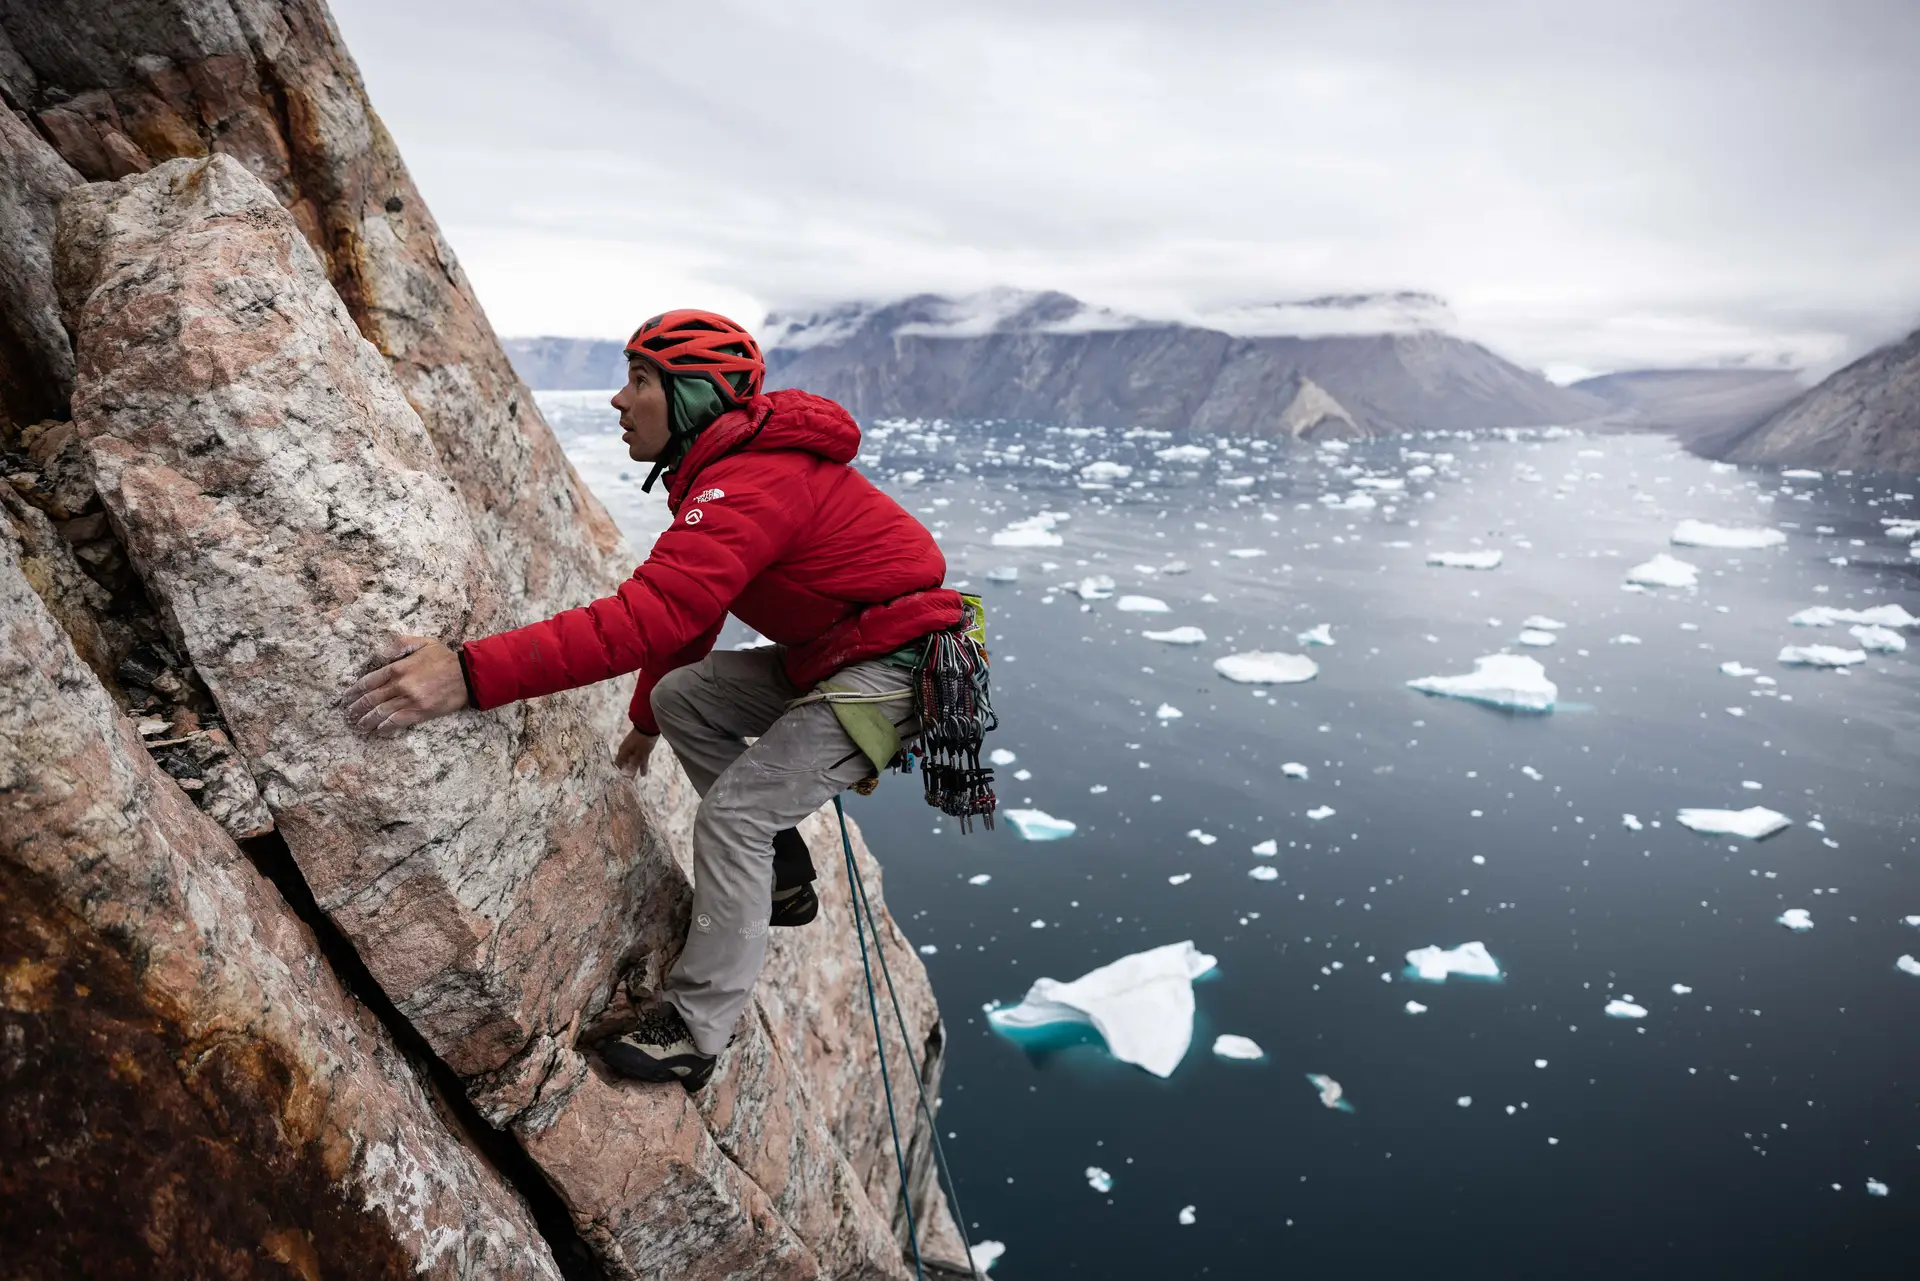 Alex Honnold no es científico pero quiere “contribuir a la ciencia climática” en el Ártico: entrevista con el escalador “épico”